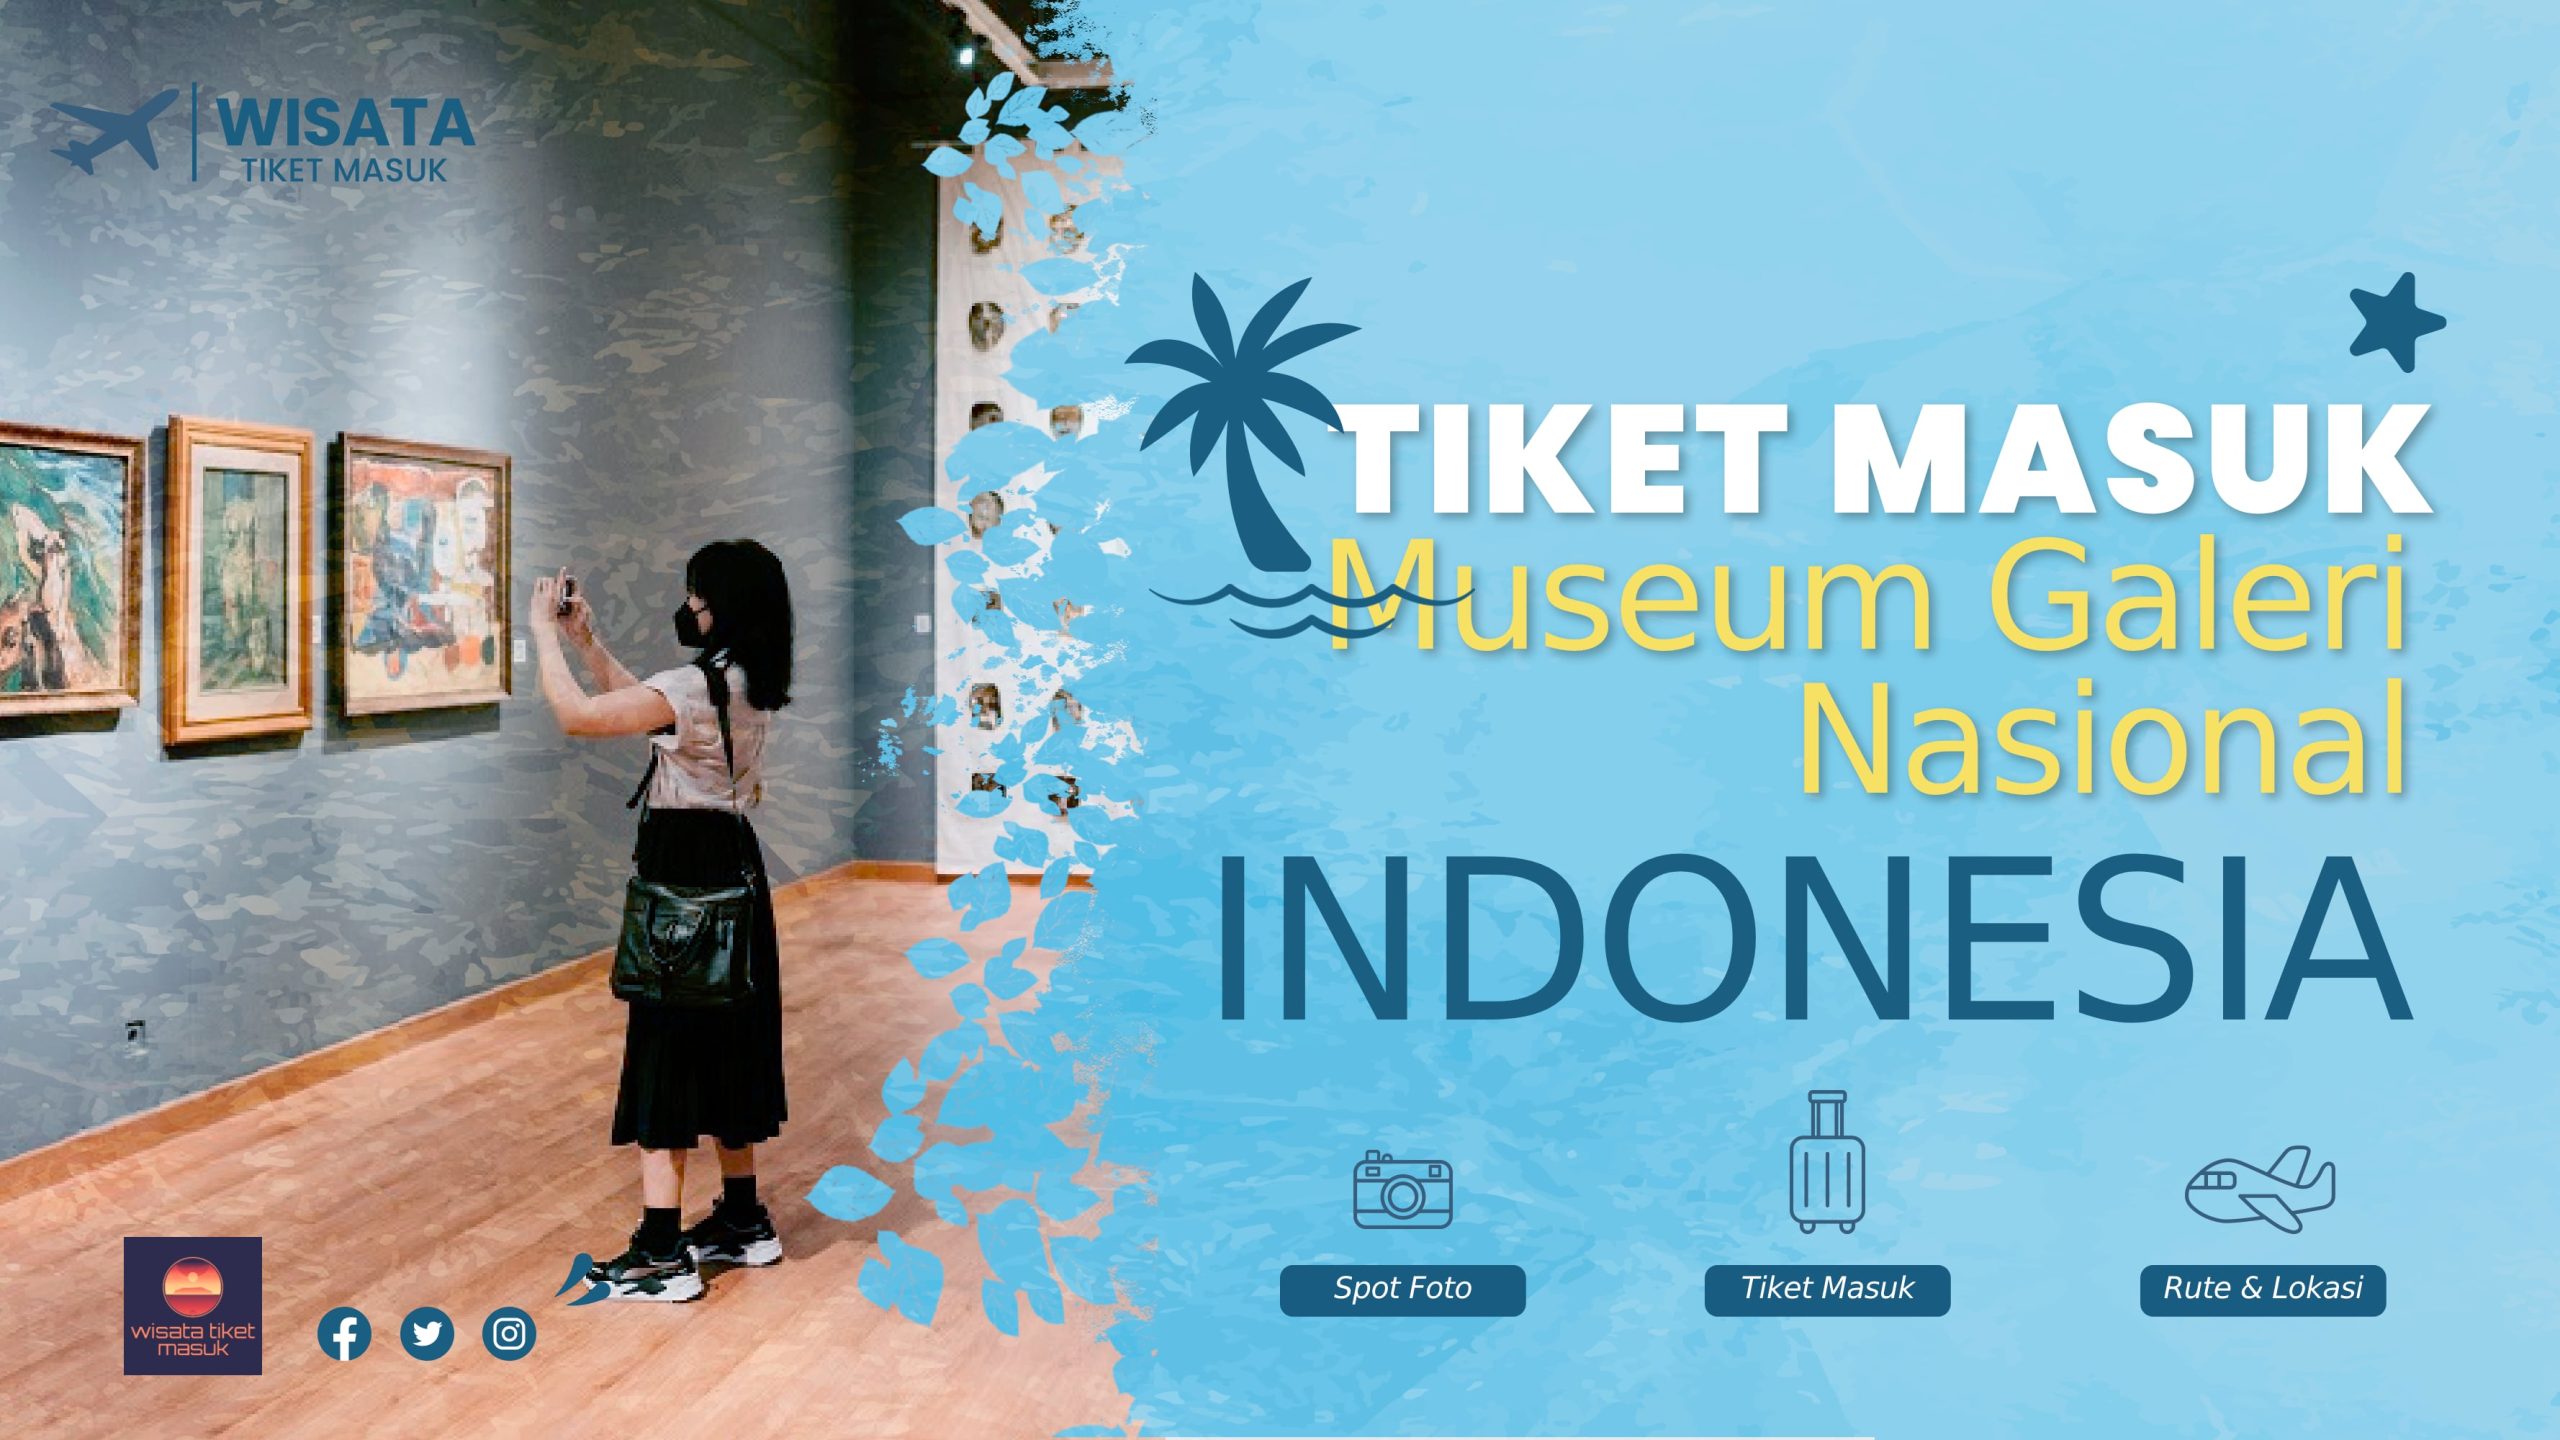 Tiket Masuk Museum Galeri Nasional Indonesia